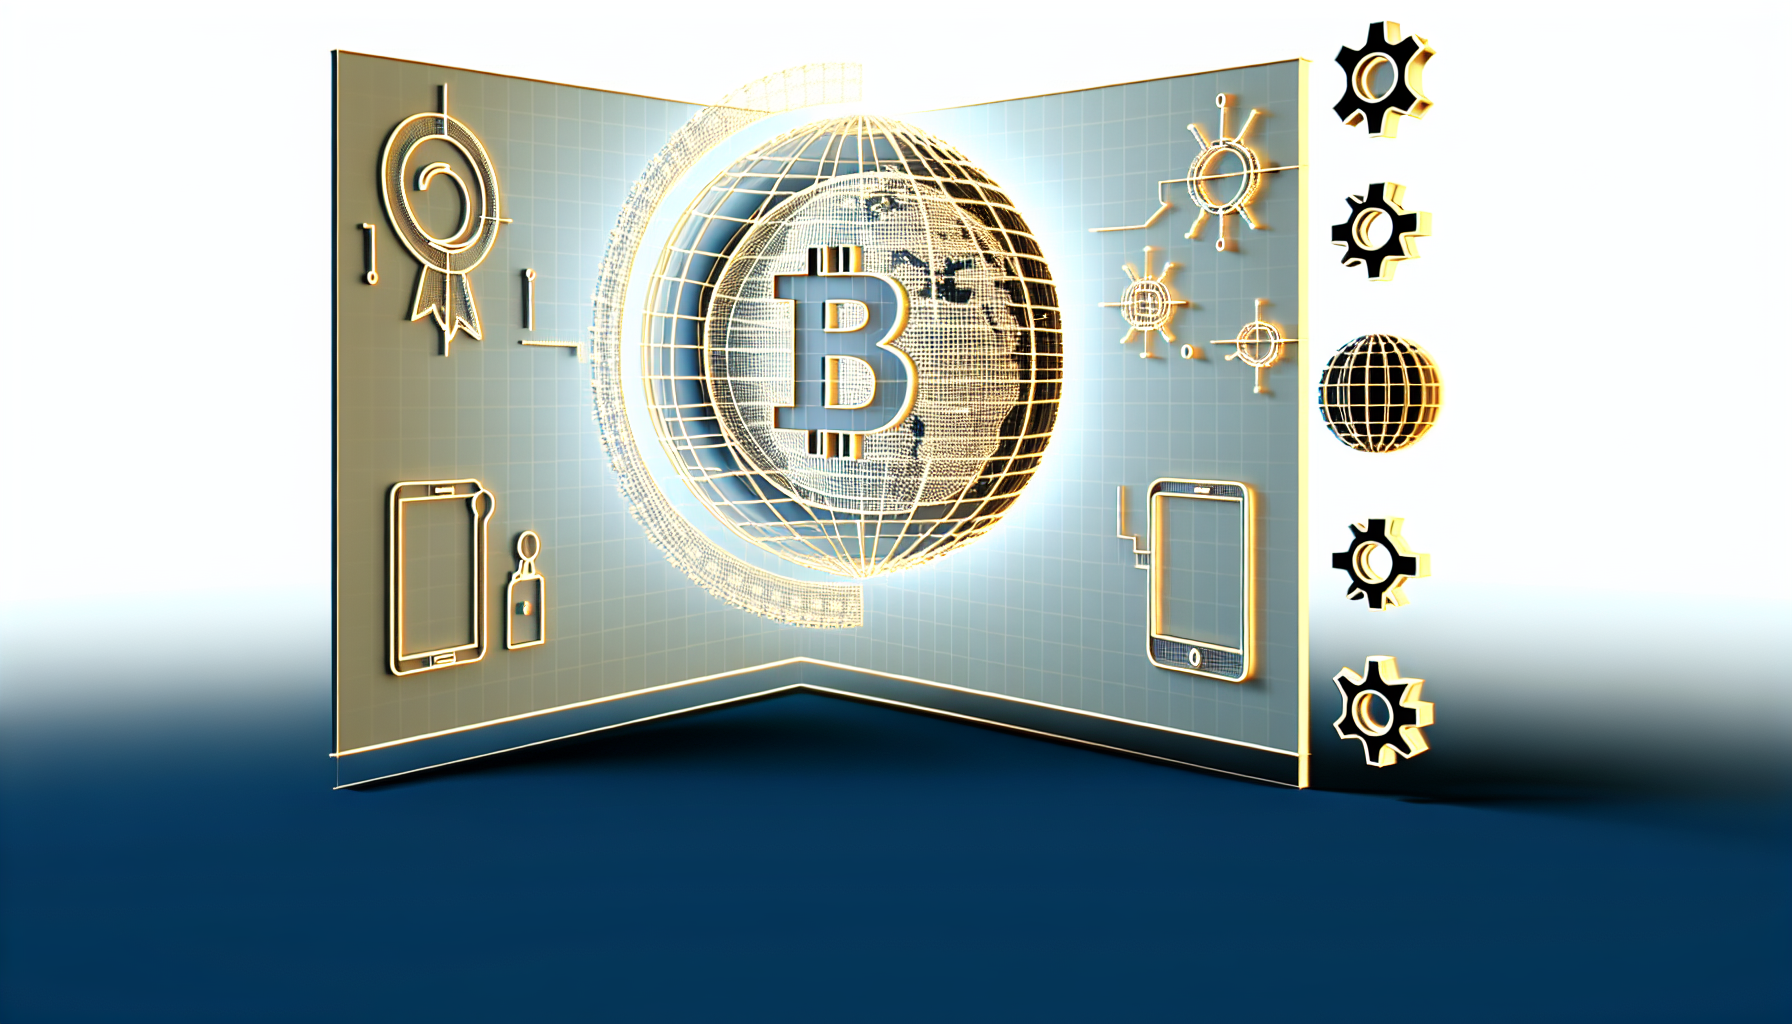                               VanEck Bitcoin Trust (HODL): Der neue Bitcoin ETF im Überblick                             
                              